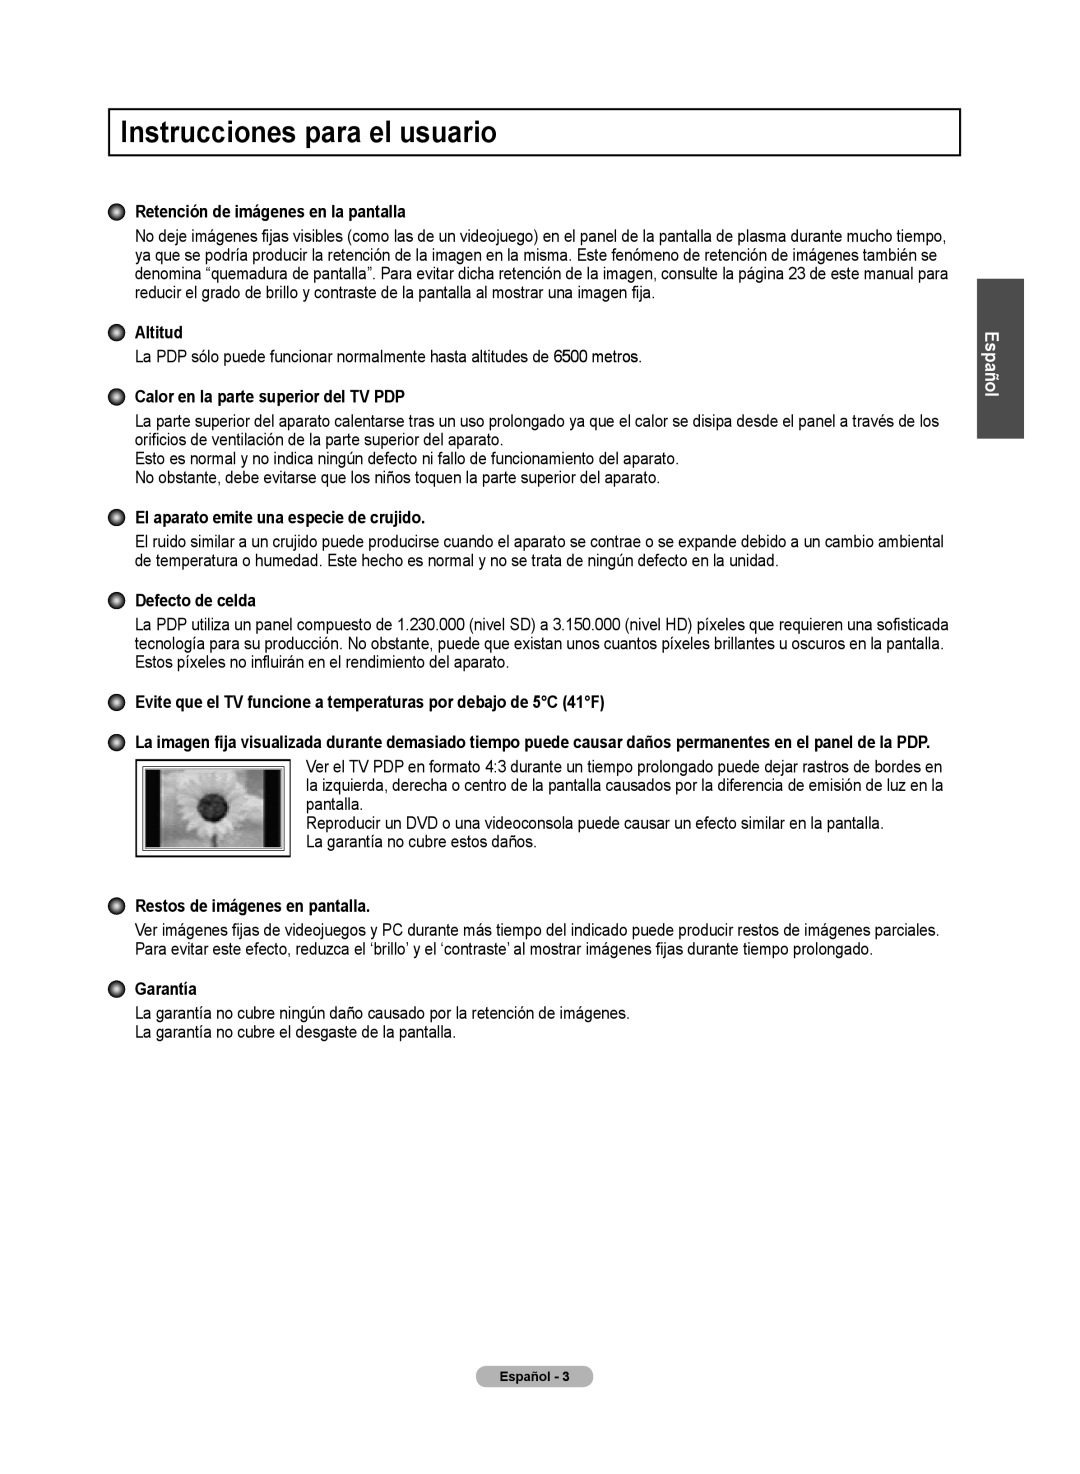 Samsung 510 Instrucciones para el usuario, Retención de imágenes en la pantallla, Altitud, Defecto de celda, Garantía 